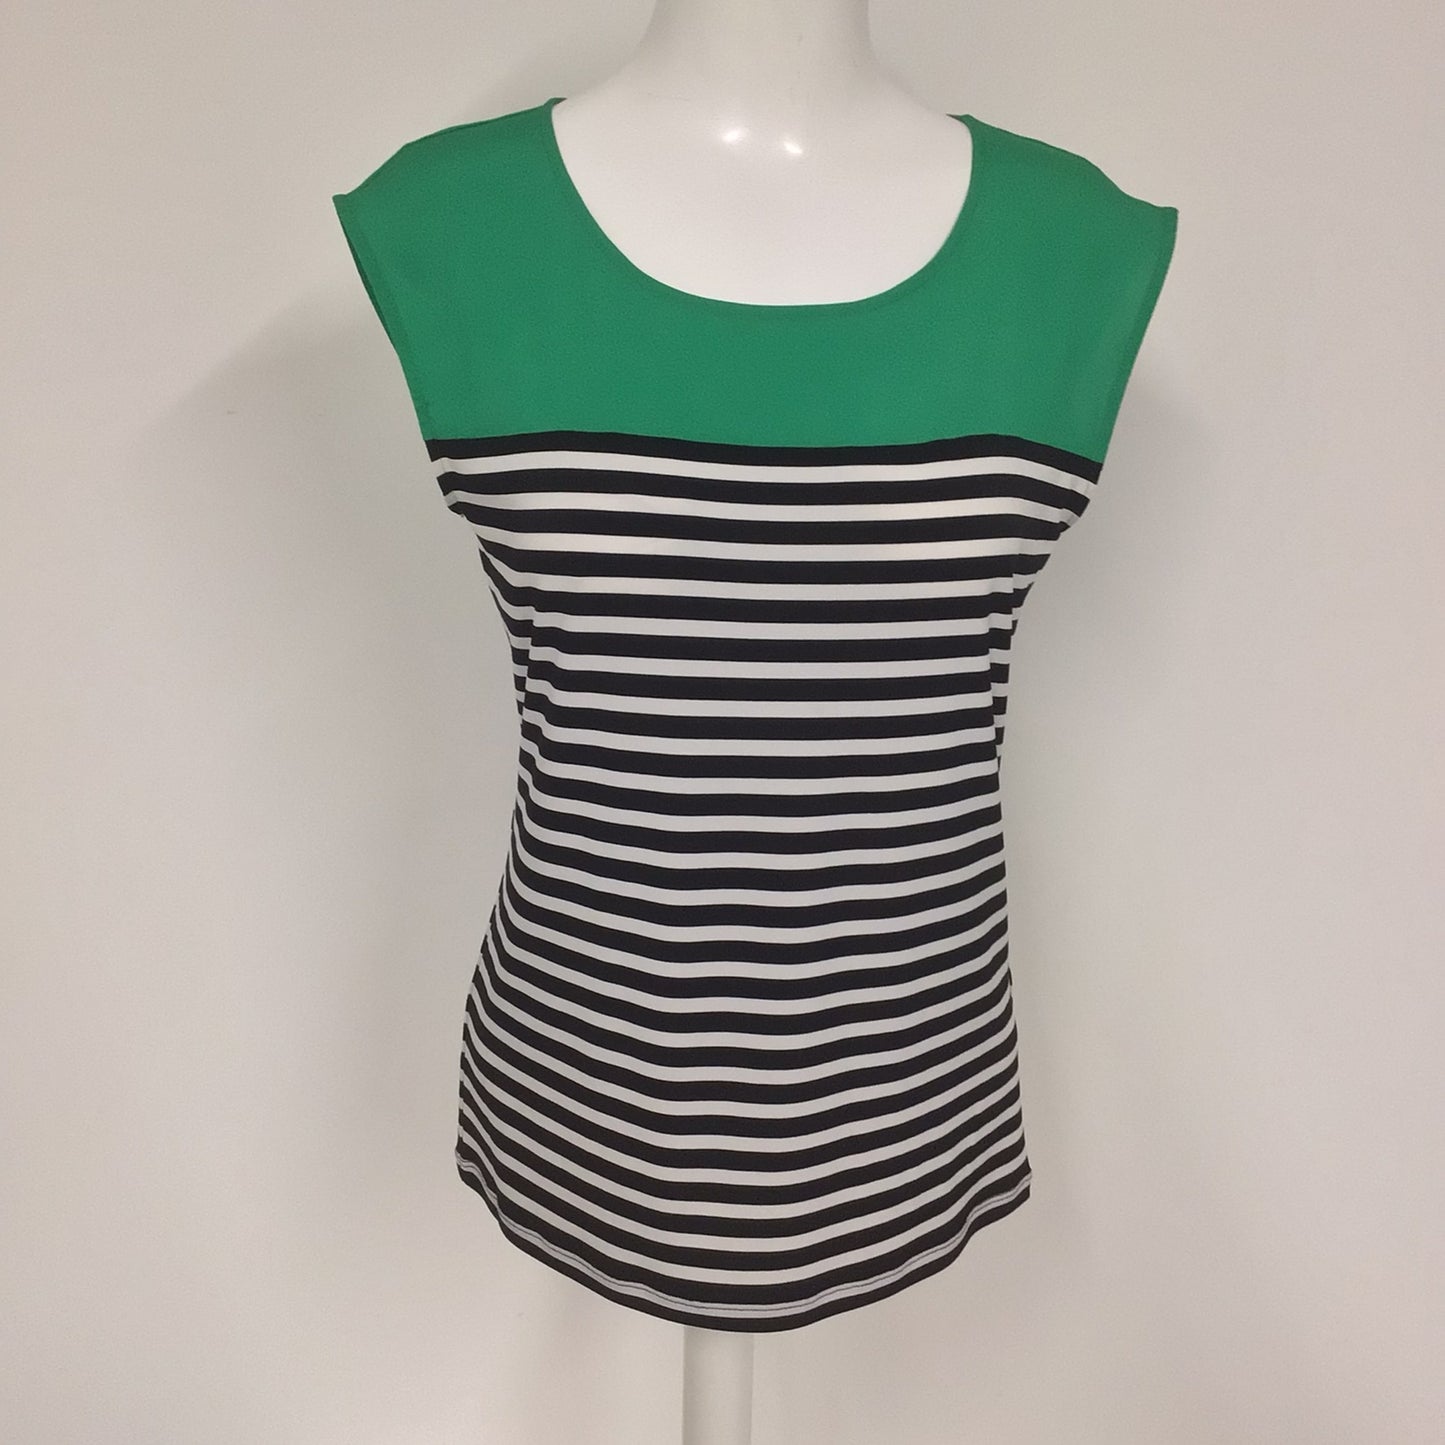 BNWT Calvin Klein Green & Black/White Striped Top Size S